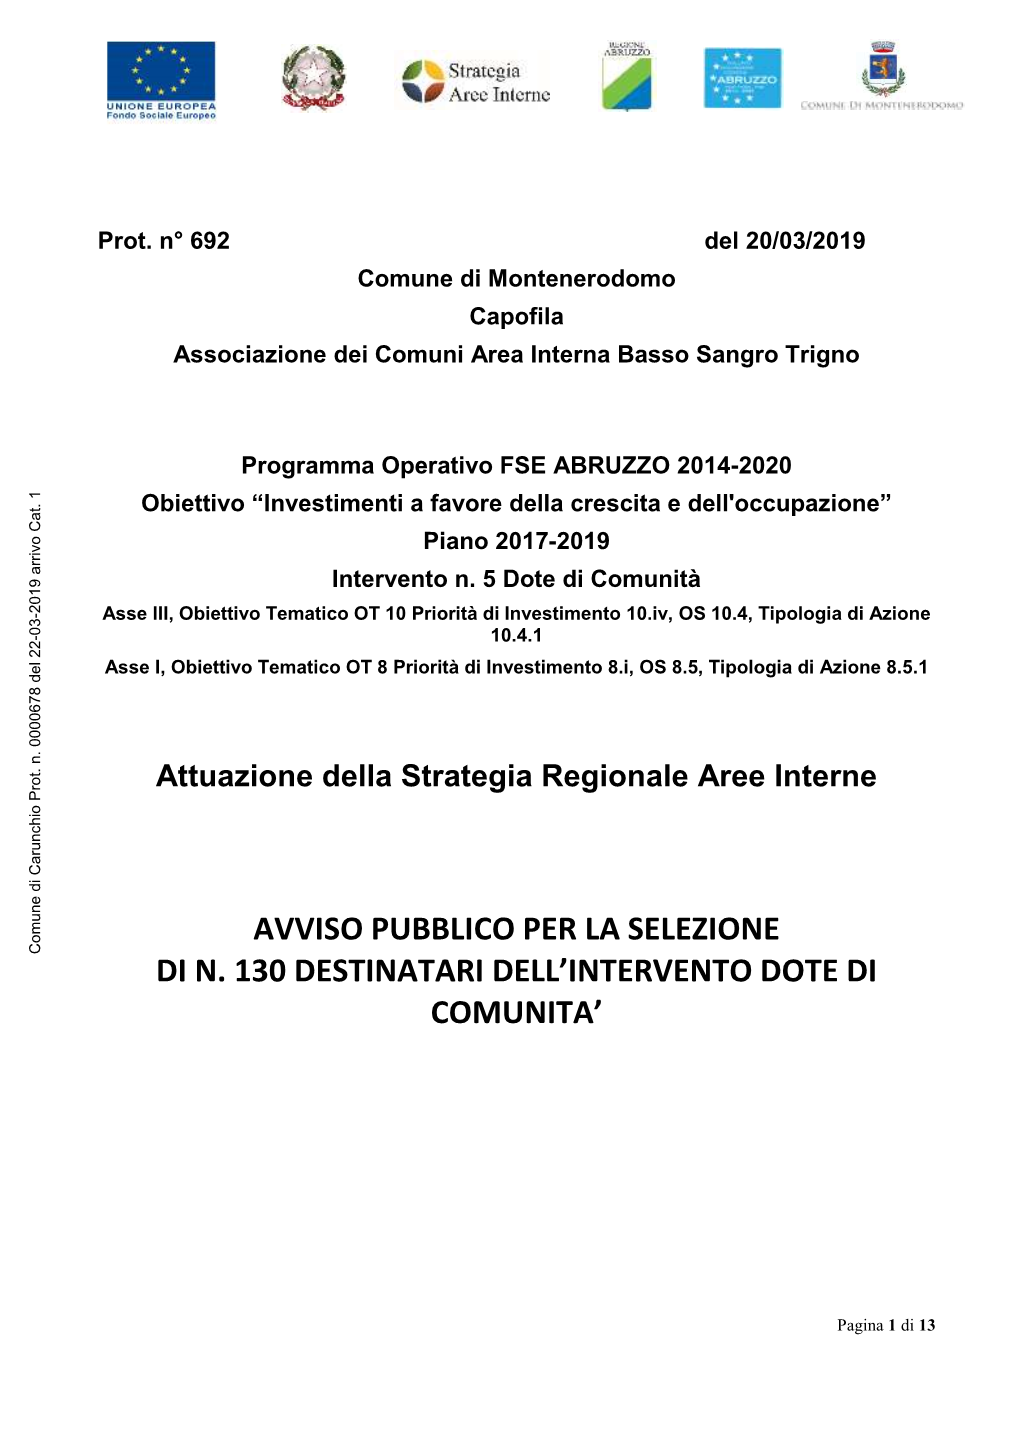 Avviso Pubblico Per La Selezione Di N. 130 Destinatari Per L’Attuazione Dell’Intervento Dote Di Comunità, a Valere Sul PO FSE Abruzzo 2014-2020